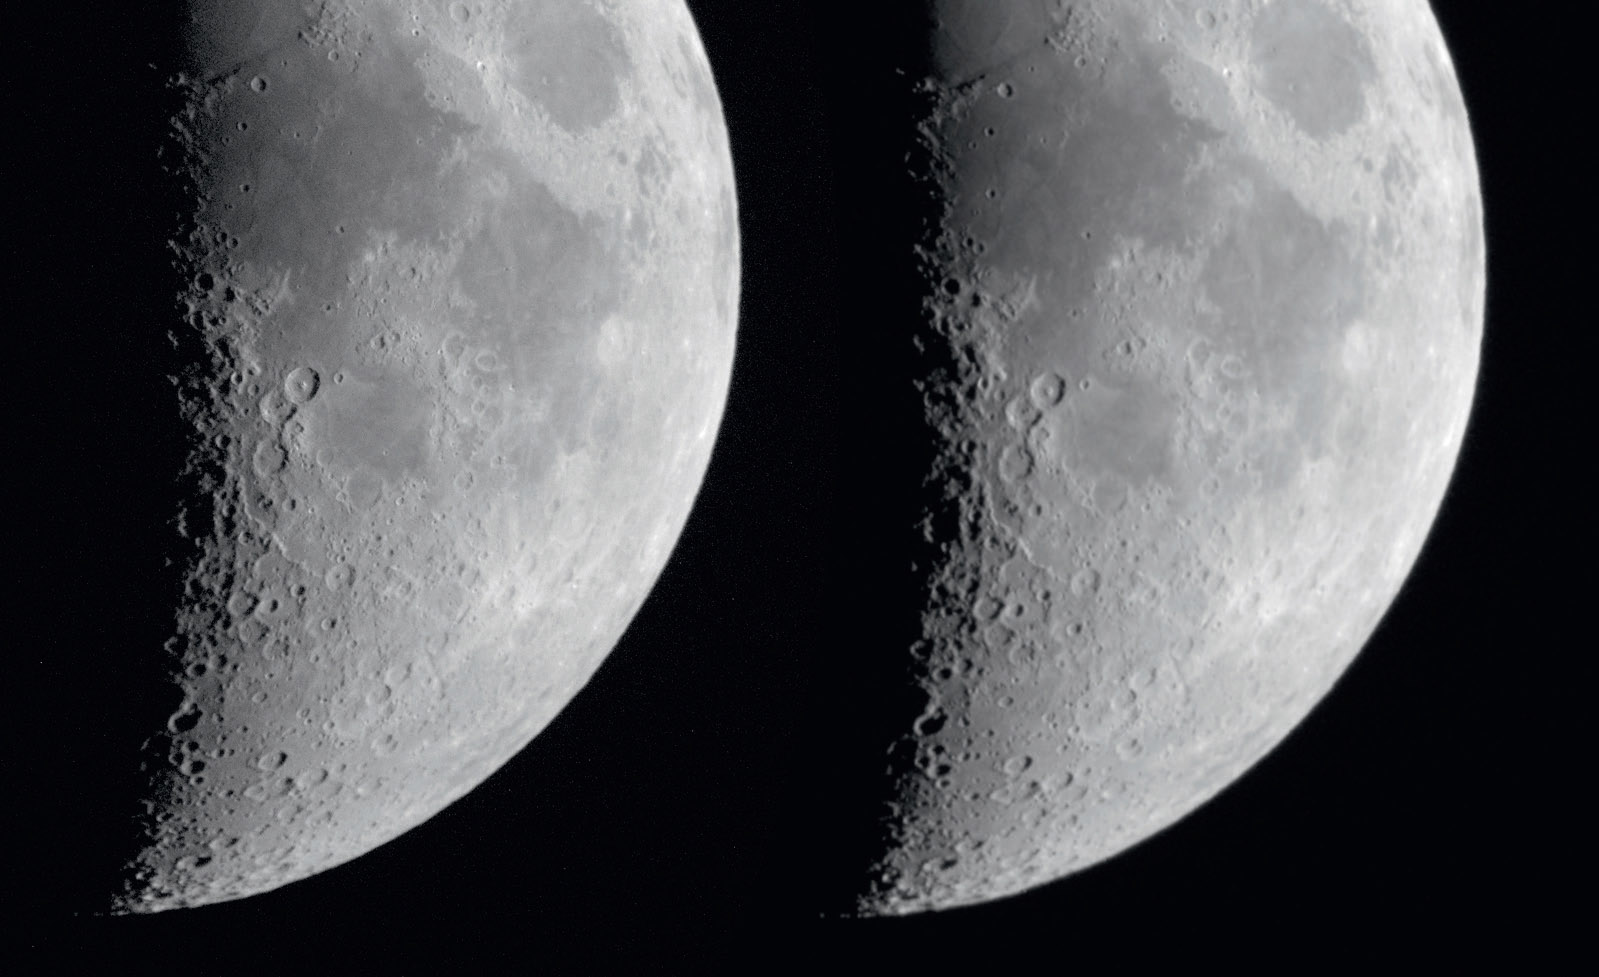 Sur des images de la Lune de très courte exposition, l’effet d’un réducteur peut être très bien illustré. À gauche, image de la Lune à f/12,4 et, à droite, image avec réducteur à f/6,7, temps d’exposition et ouverture identiques. L’image avec réducteur a été agrandie à la même échelle d’image. M. Weigand